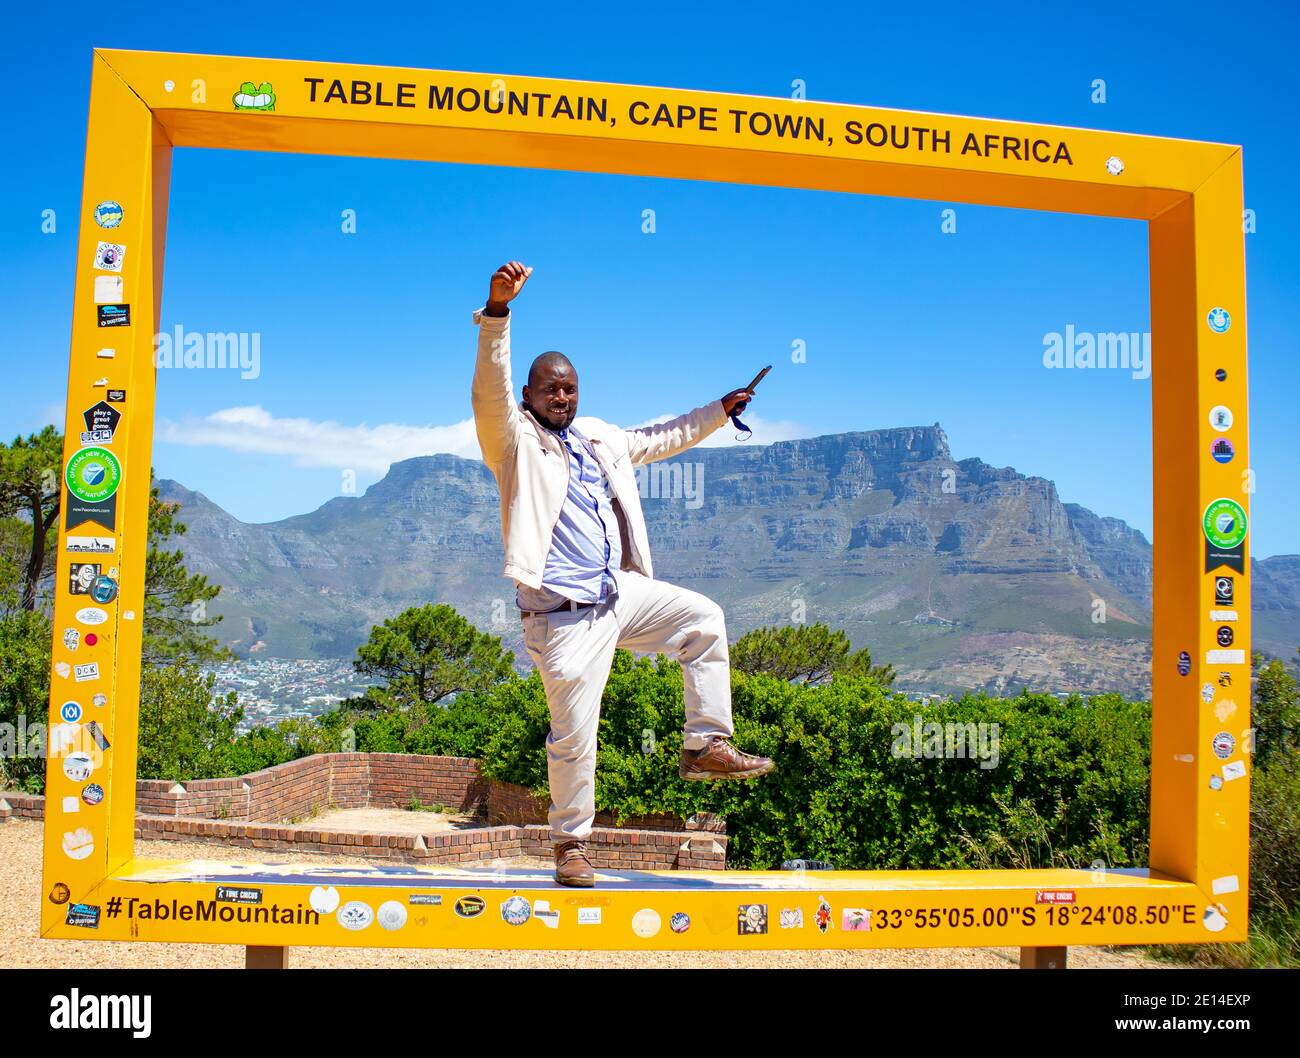 Signal Hill - Cape Town, Afrique du Sud - 12-02-2020 Homme debout dans le cadre jaune de Table Mountain. Des poses amusantes frappantes. Banque D'Images